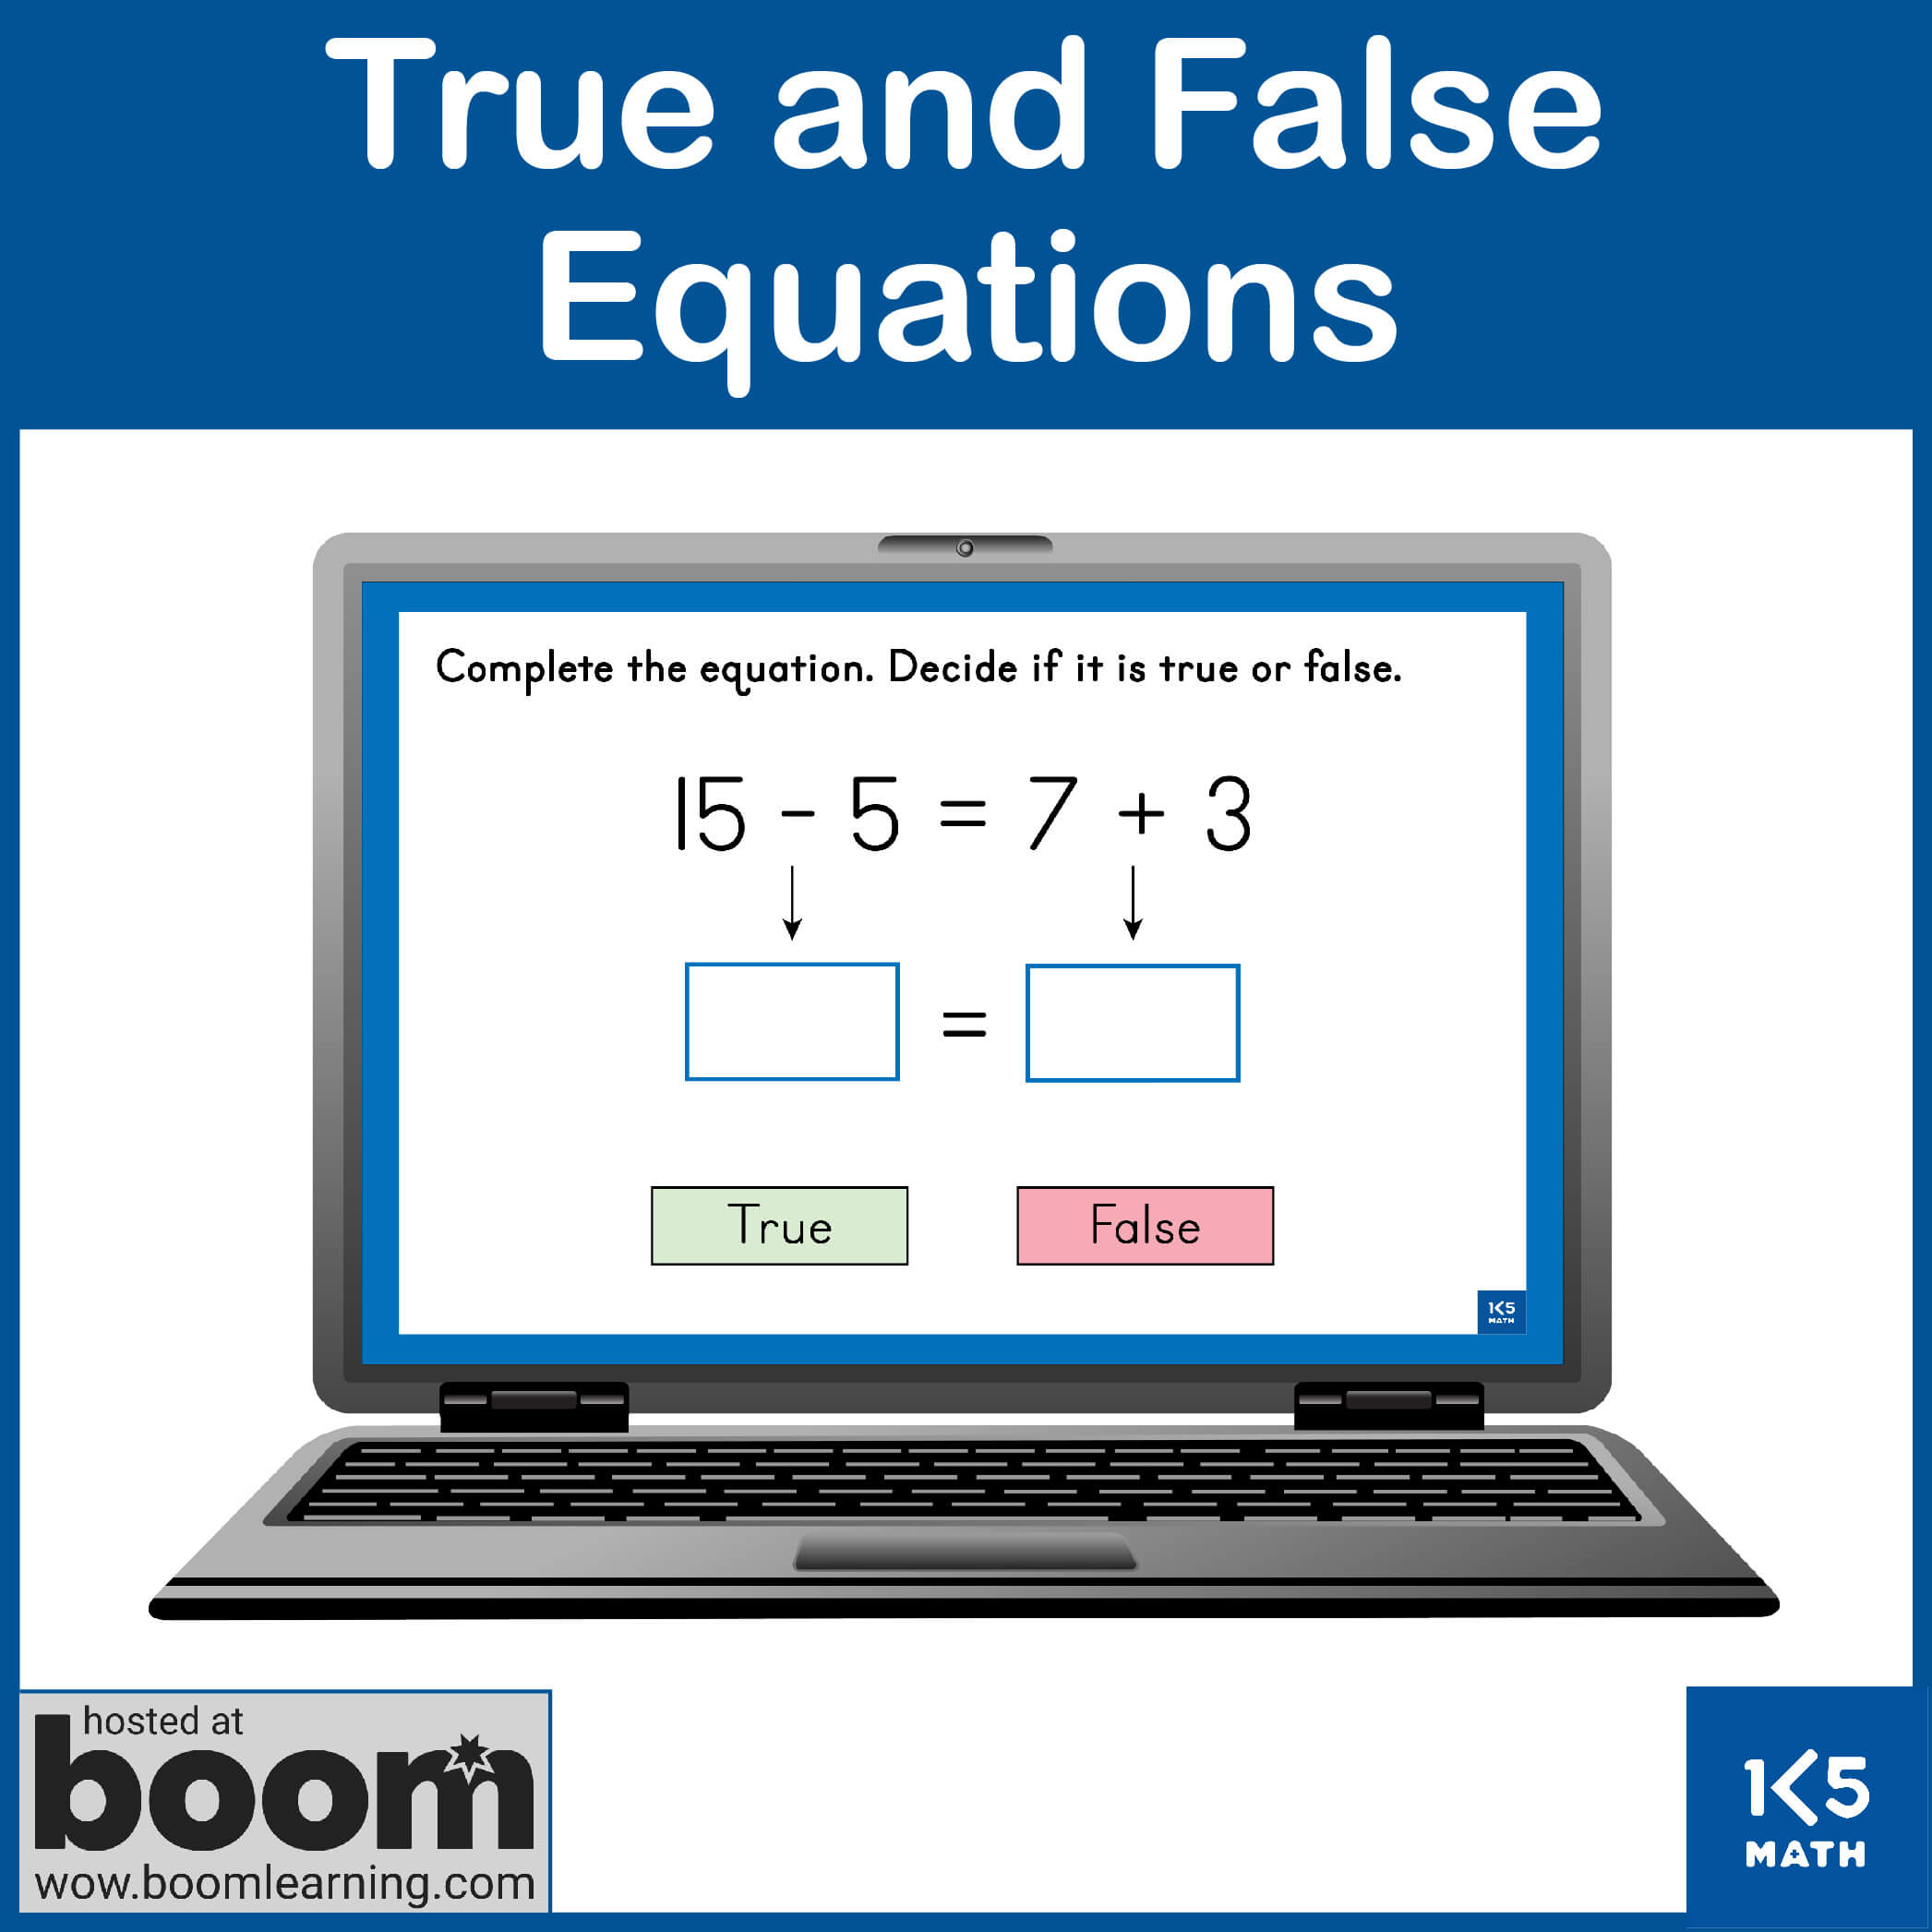 Boom Cards: True & False Equations